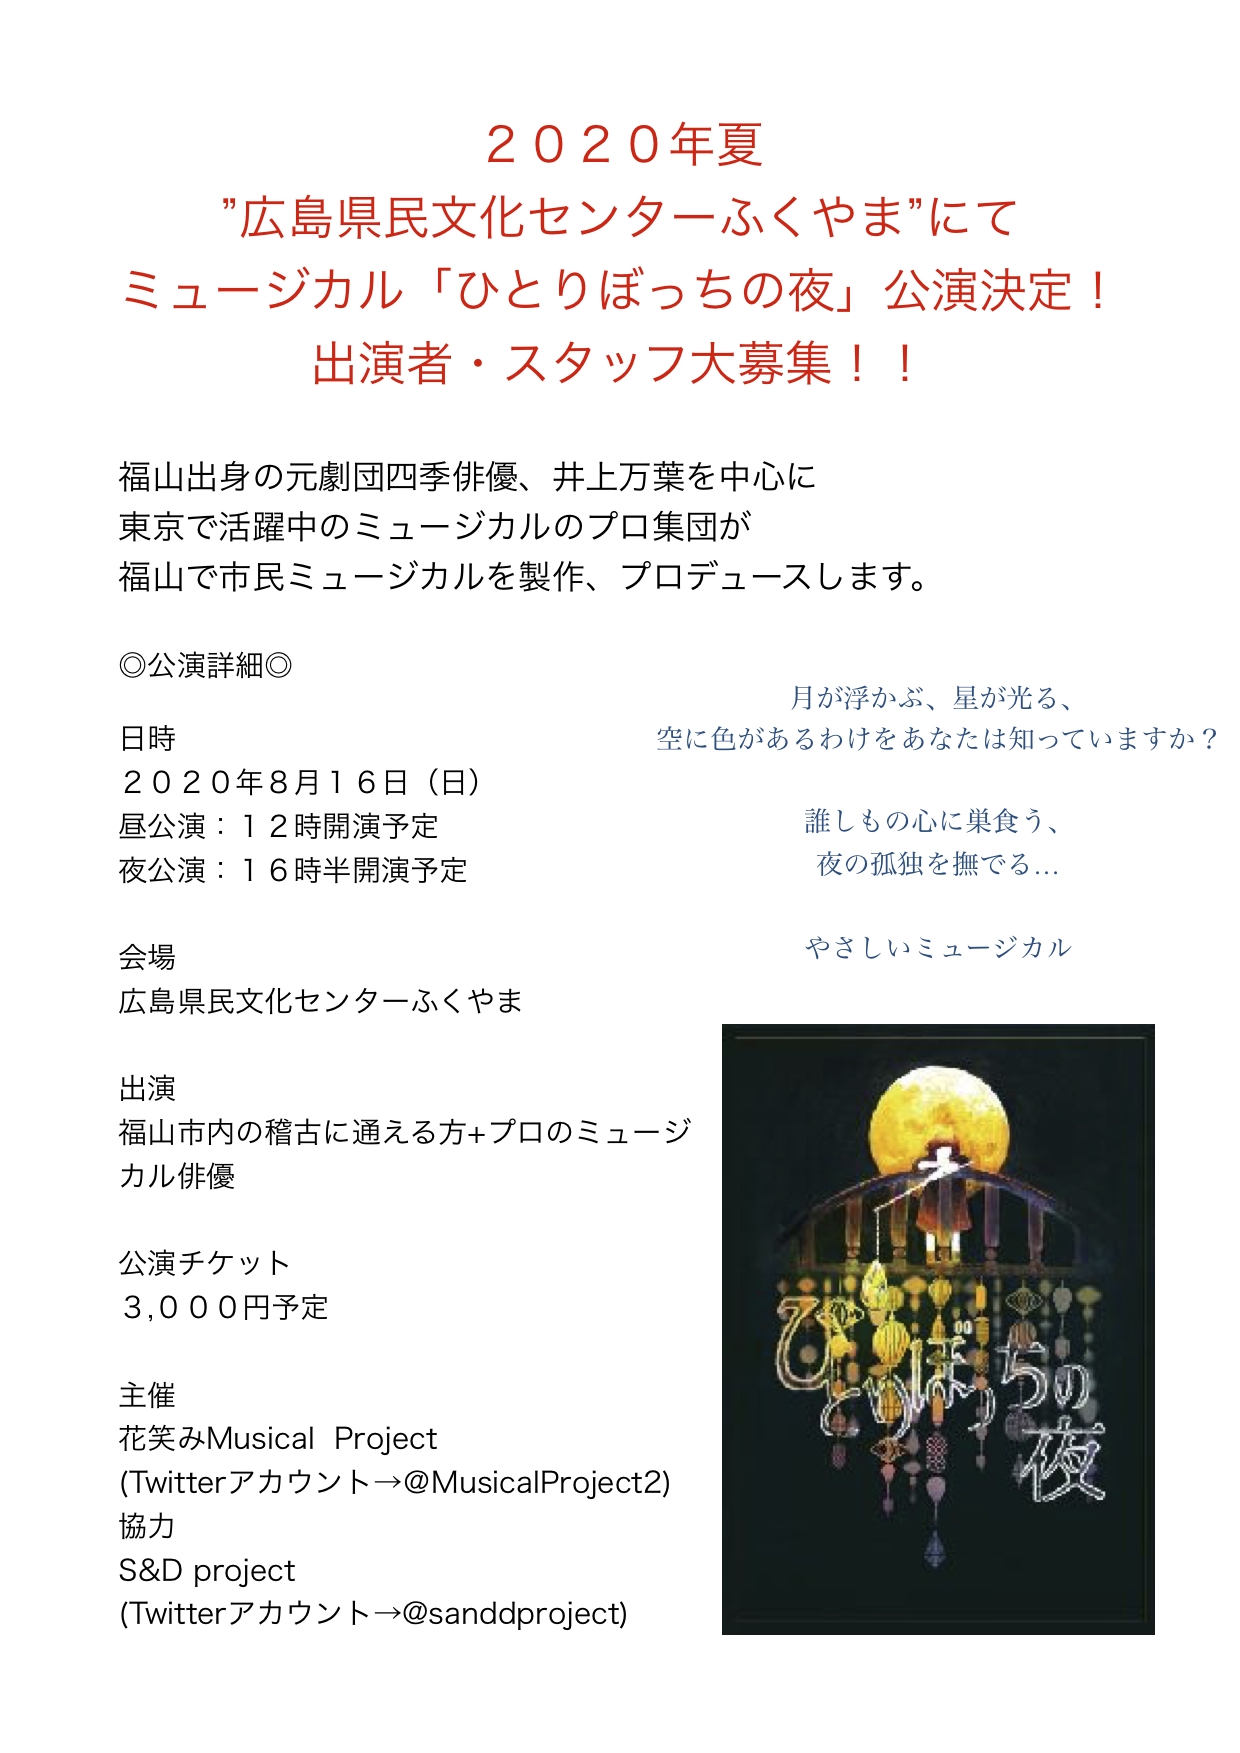 ミュージカル ひとりぼっちの夜 08 16 日 福山にて公演決定 花笑みmusical Project